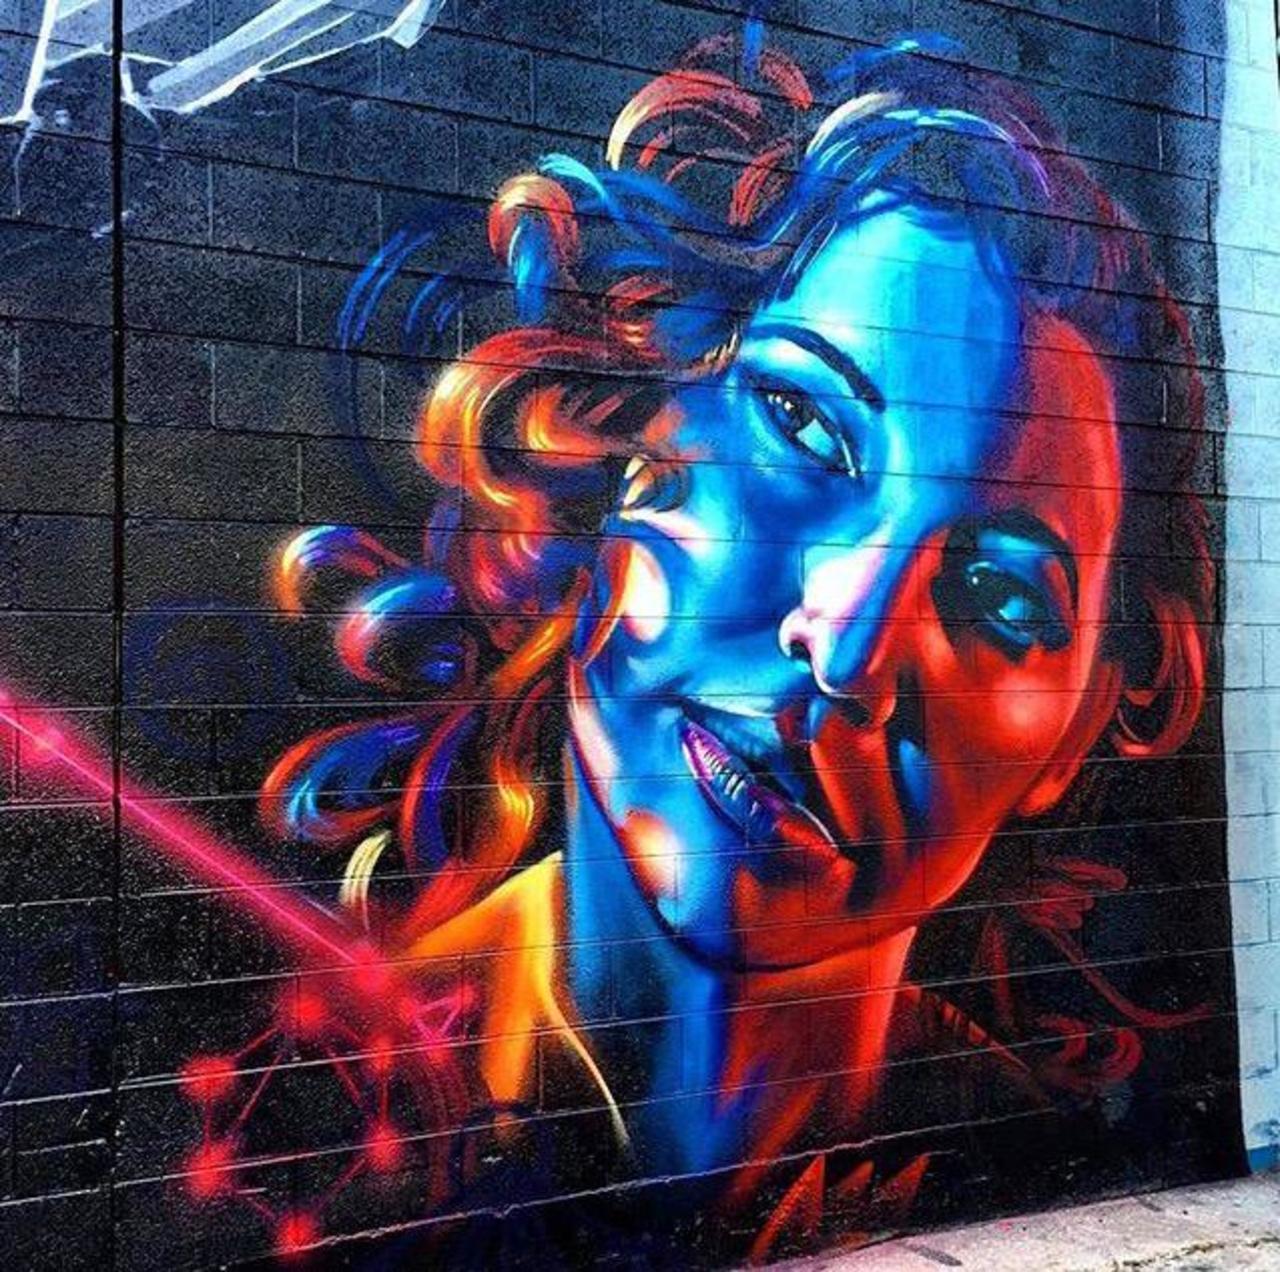 RT @wearpure_com: Street Art by dreadicrgod 

#art #graffiti #mural #streetart http://t.co/veIpJfvByn